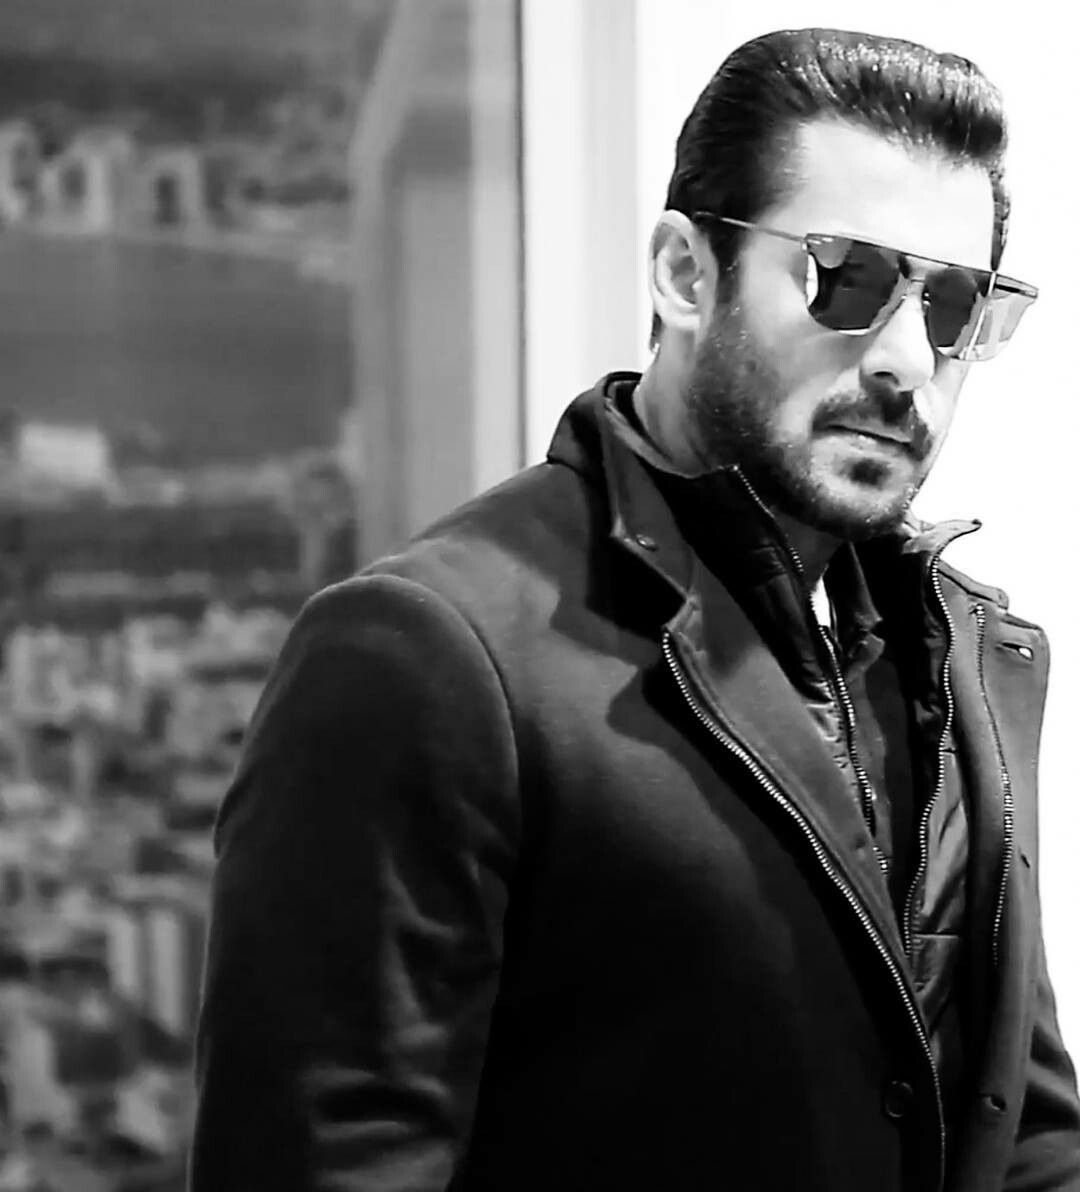 Salman Khan Wallpaper For Iphone - 1080x1192 Wallpaper 